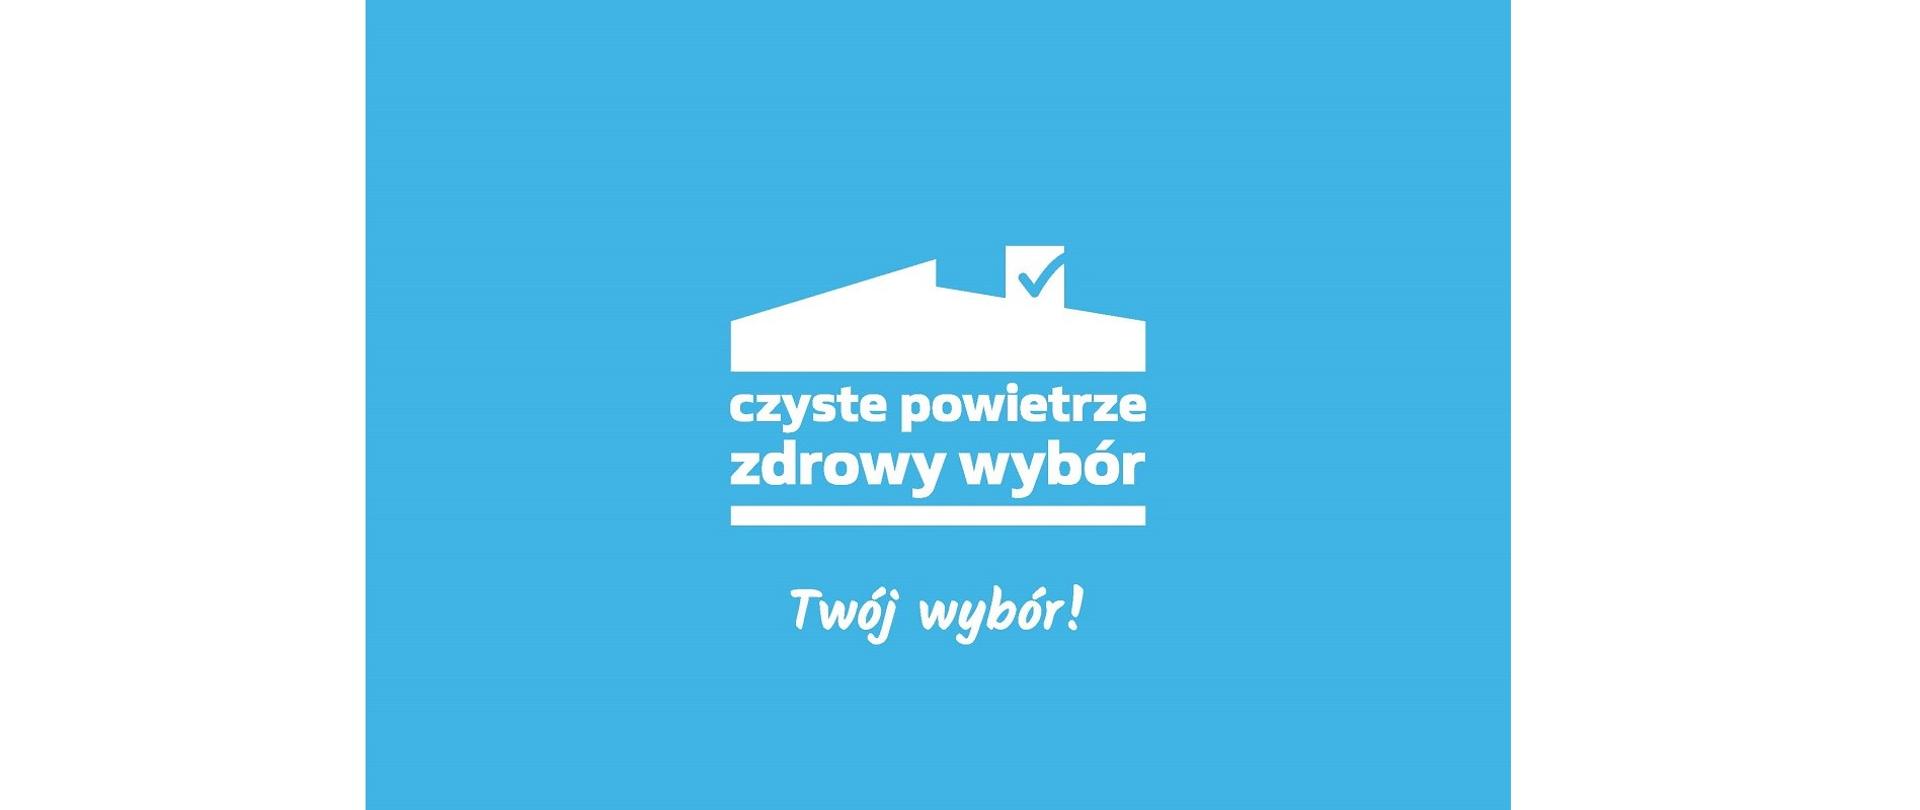 Logo programu „Czyste Powietrze”. Na niebieskim tle w kolorze białym symbol dachu z kominem. Poniżej napis: czyste powietrze zdrowy wybór. Twój wybór!